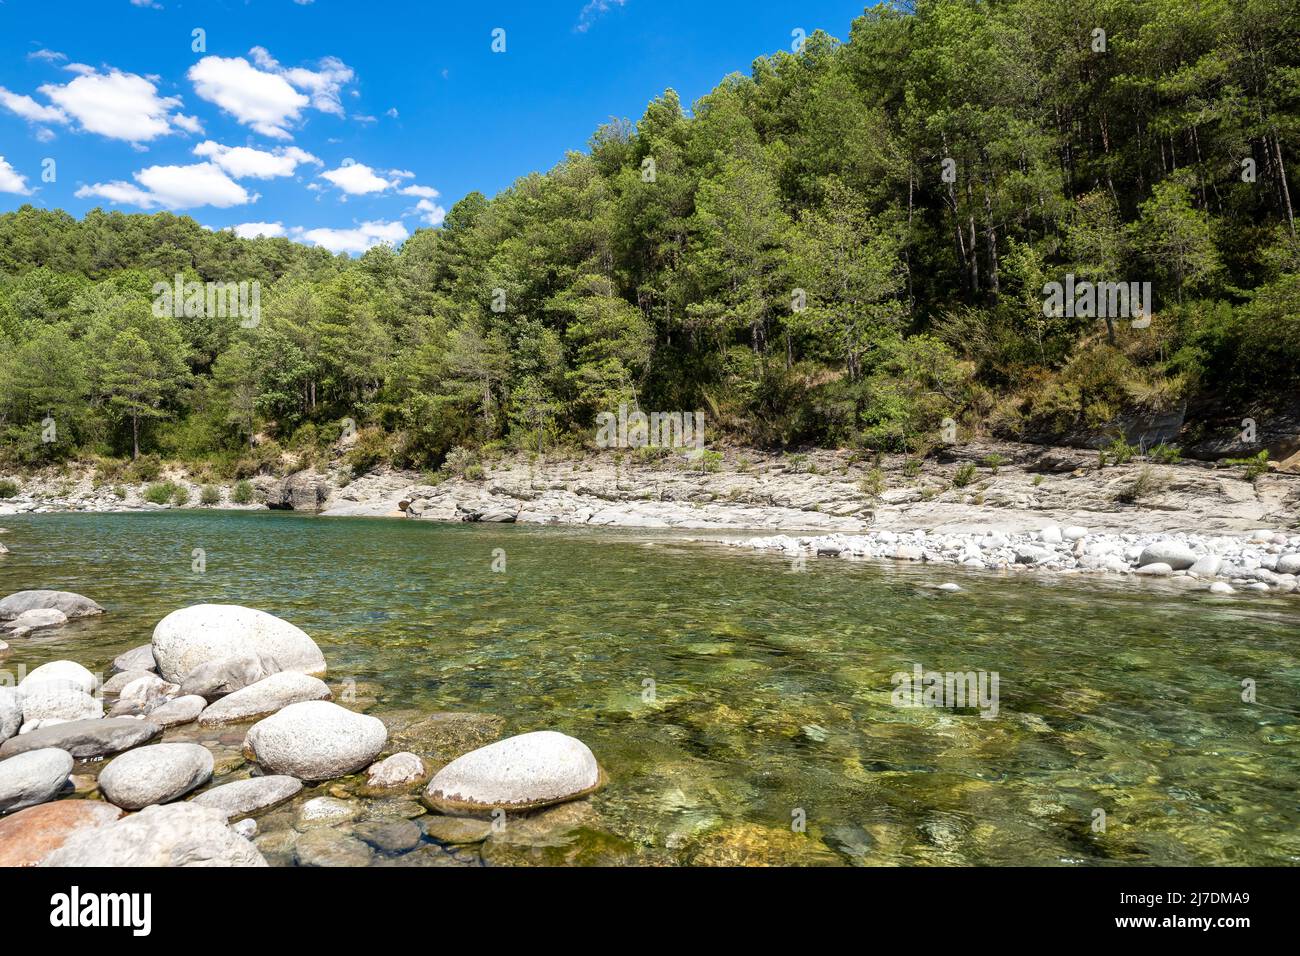 Rivière Cinca dans la forêt d'aragon. La montagne espagnole avec ses magnifiques piscines naturelles dans l'eau cristalline dans le nord de Huesca, espagne Banque D'Images